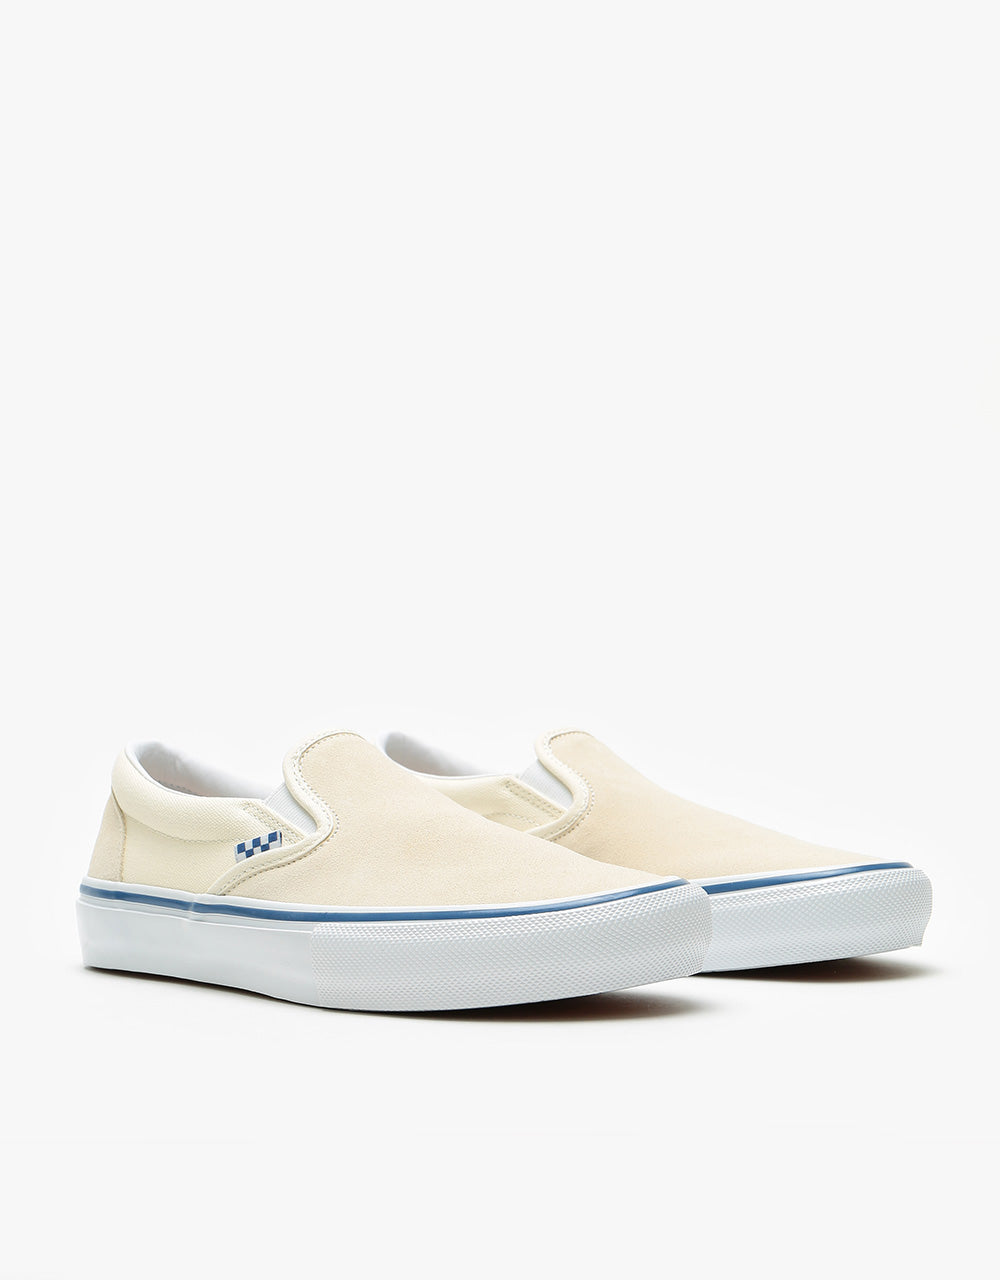 Vans Skate Slip-On Shoes - Off White